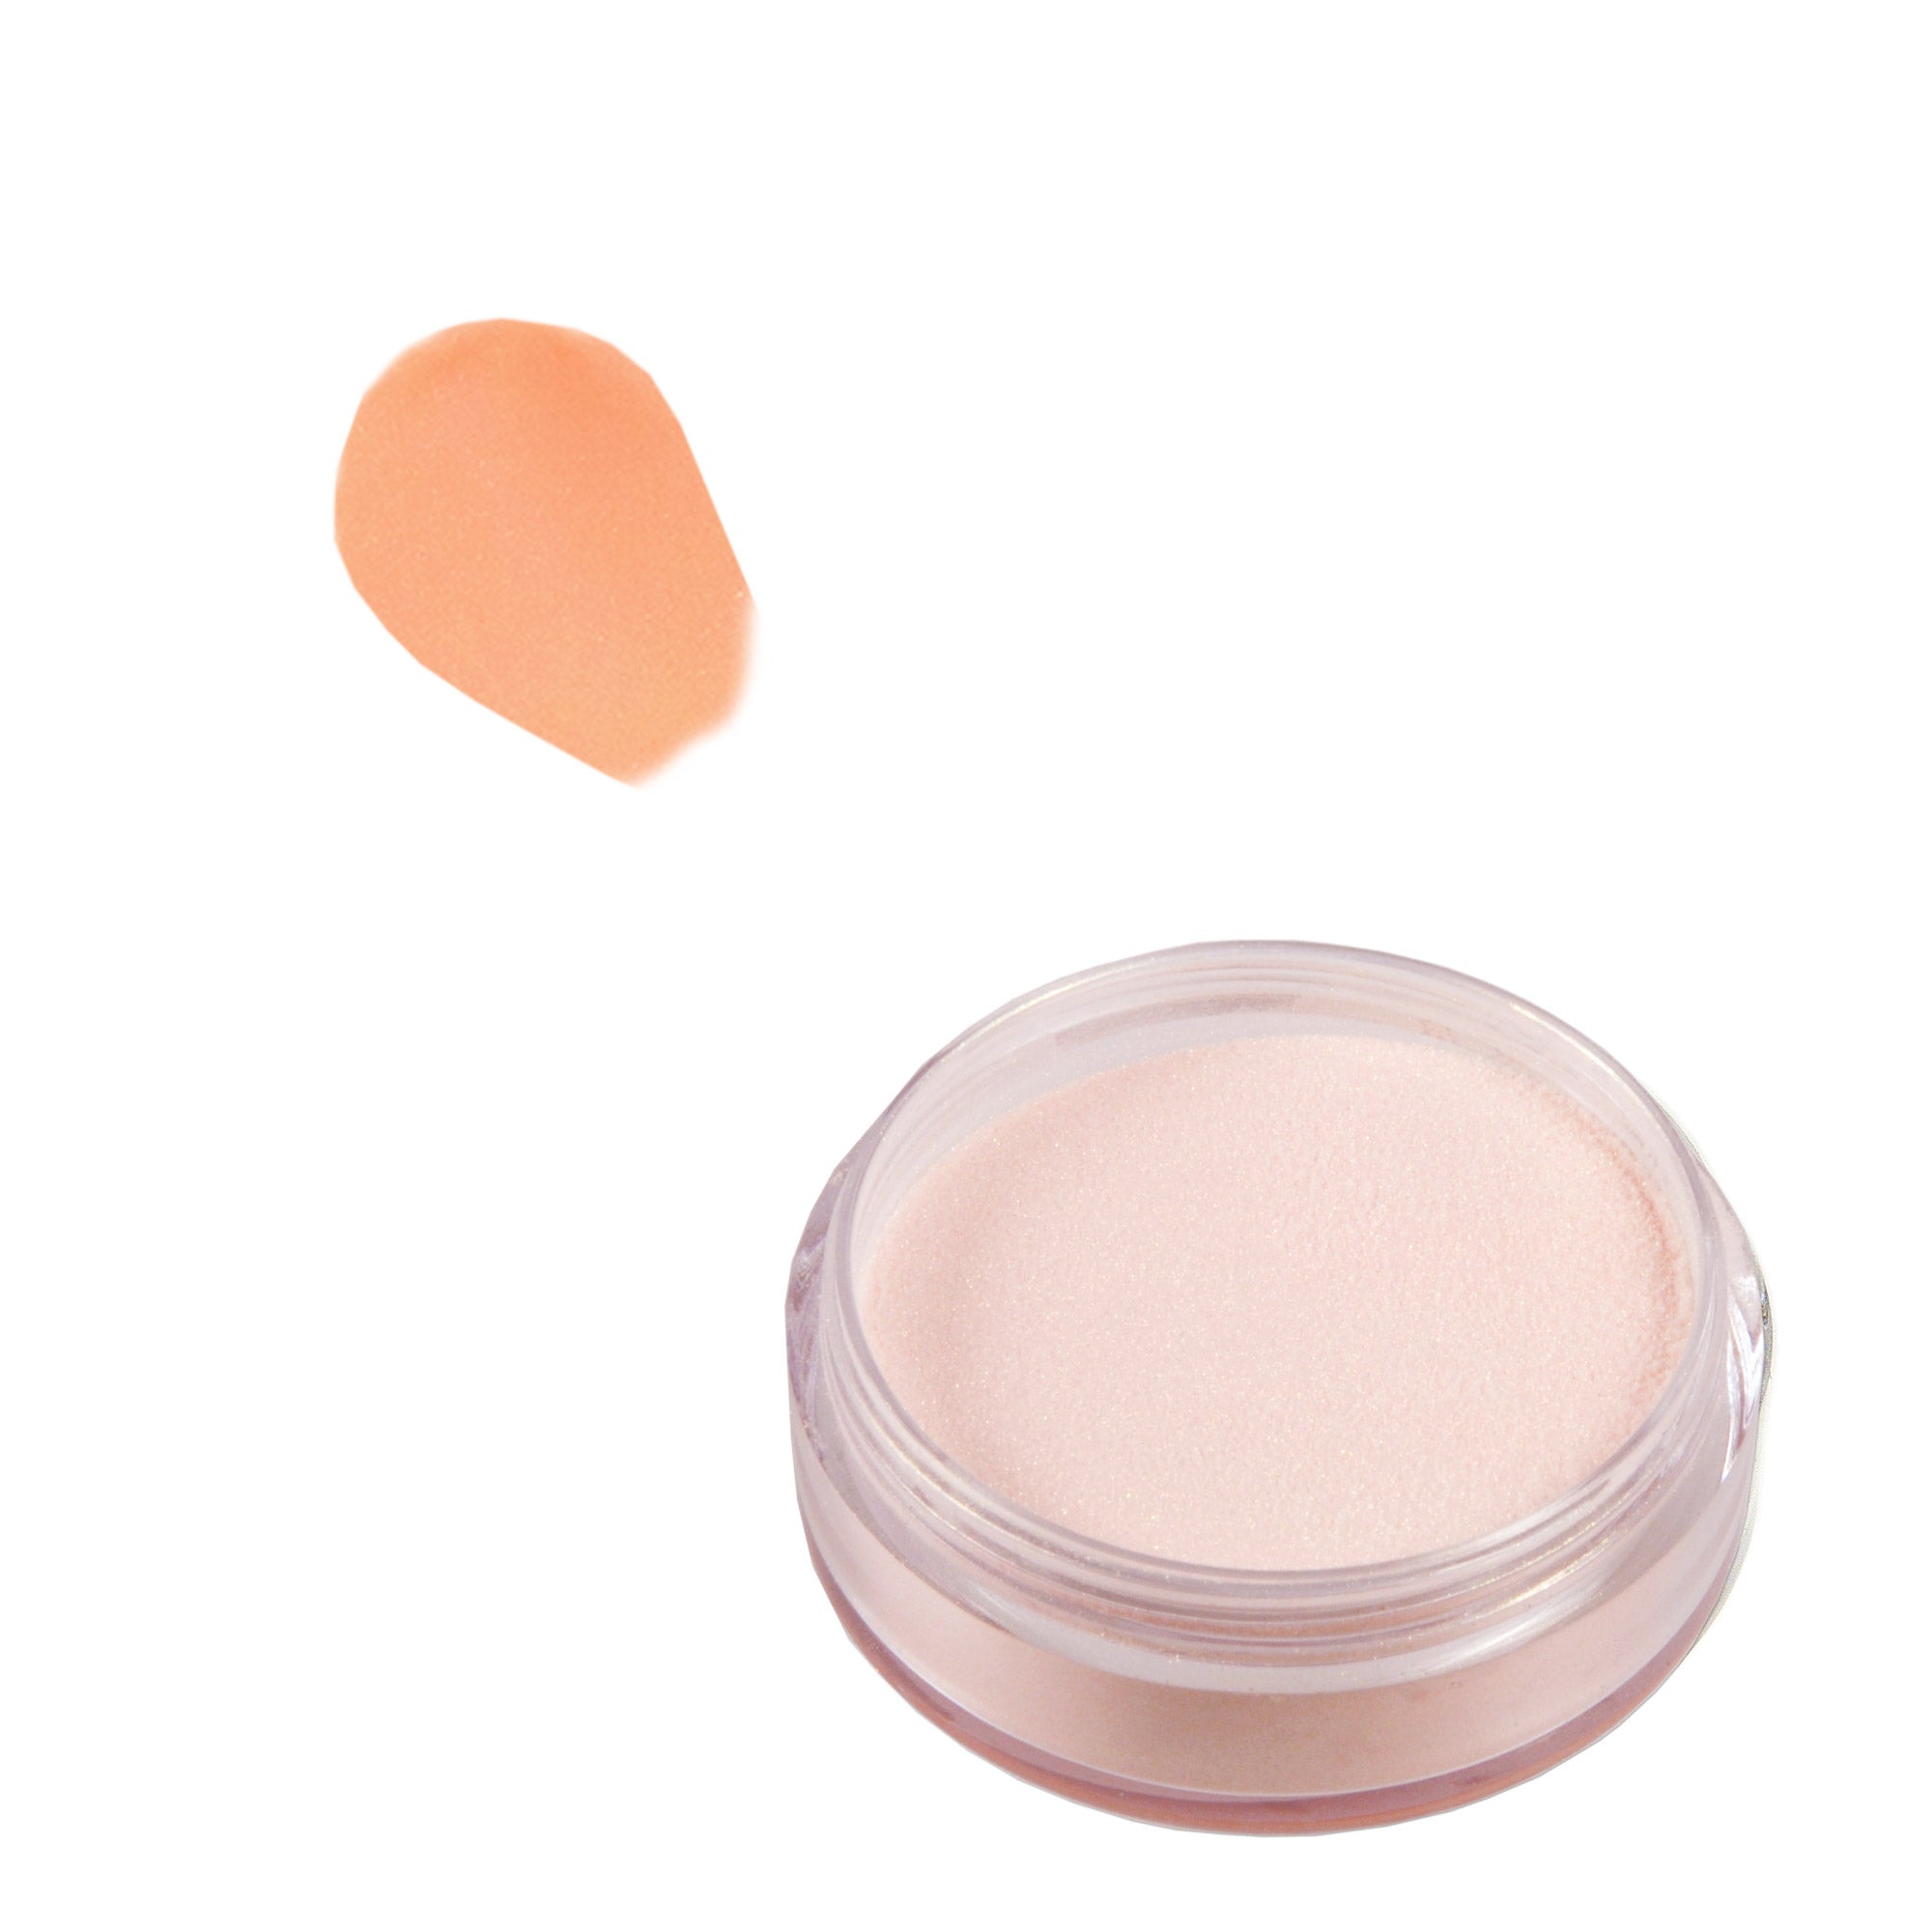 Acrylic Powder 10 g - Pastel Orange